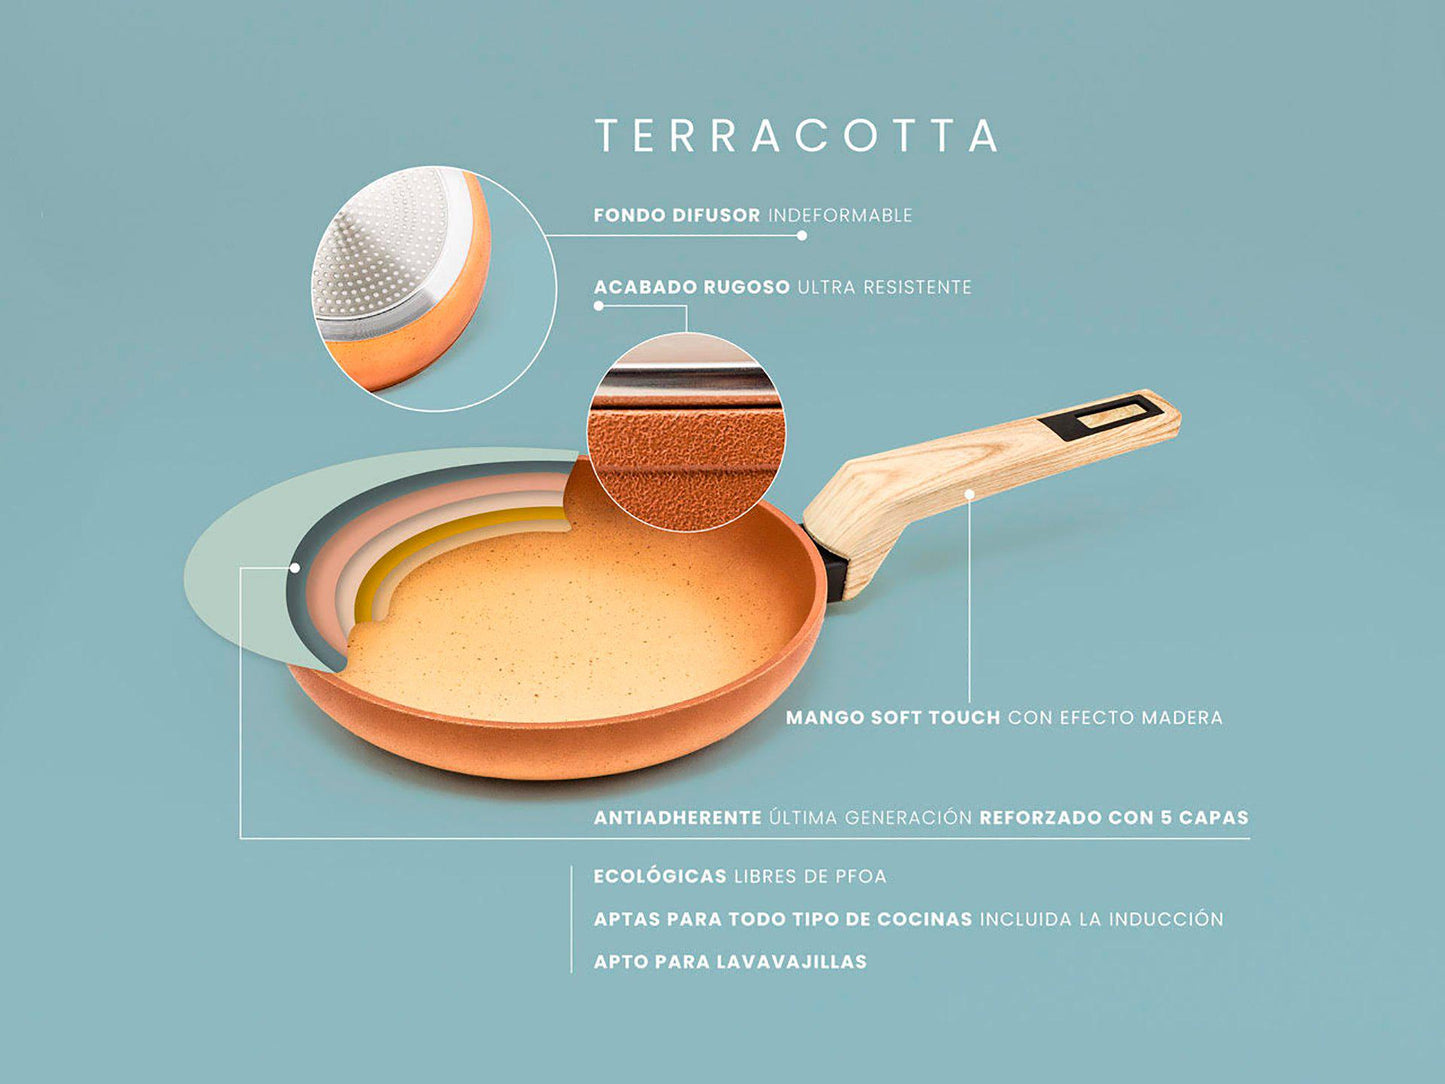 Cazuela Terracotta para horno y todo tipo de cocinas, incluida inducción